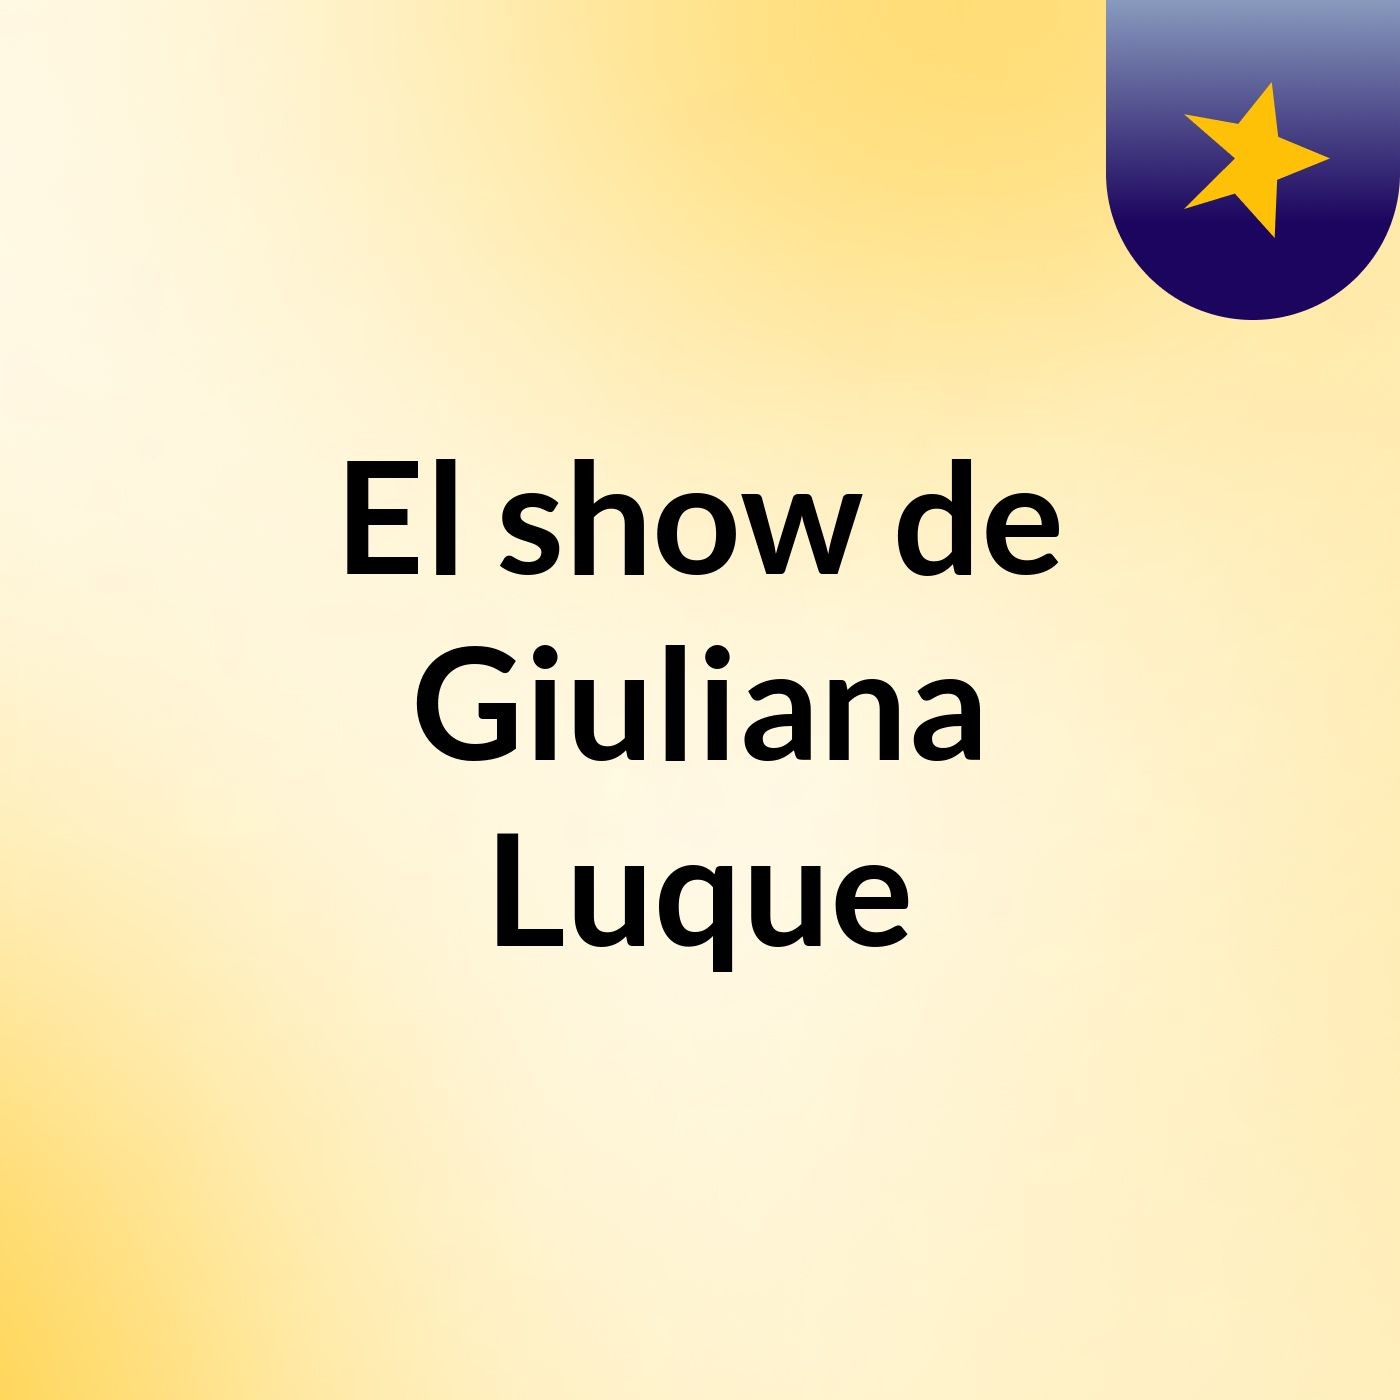 Episodio 4 - El show de Giuliana Luque